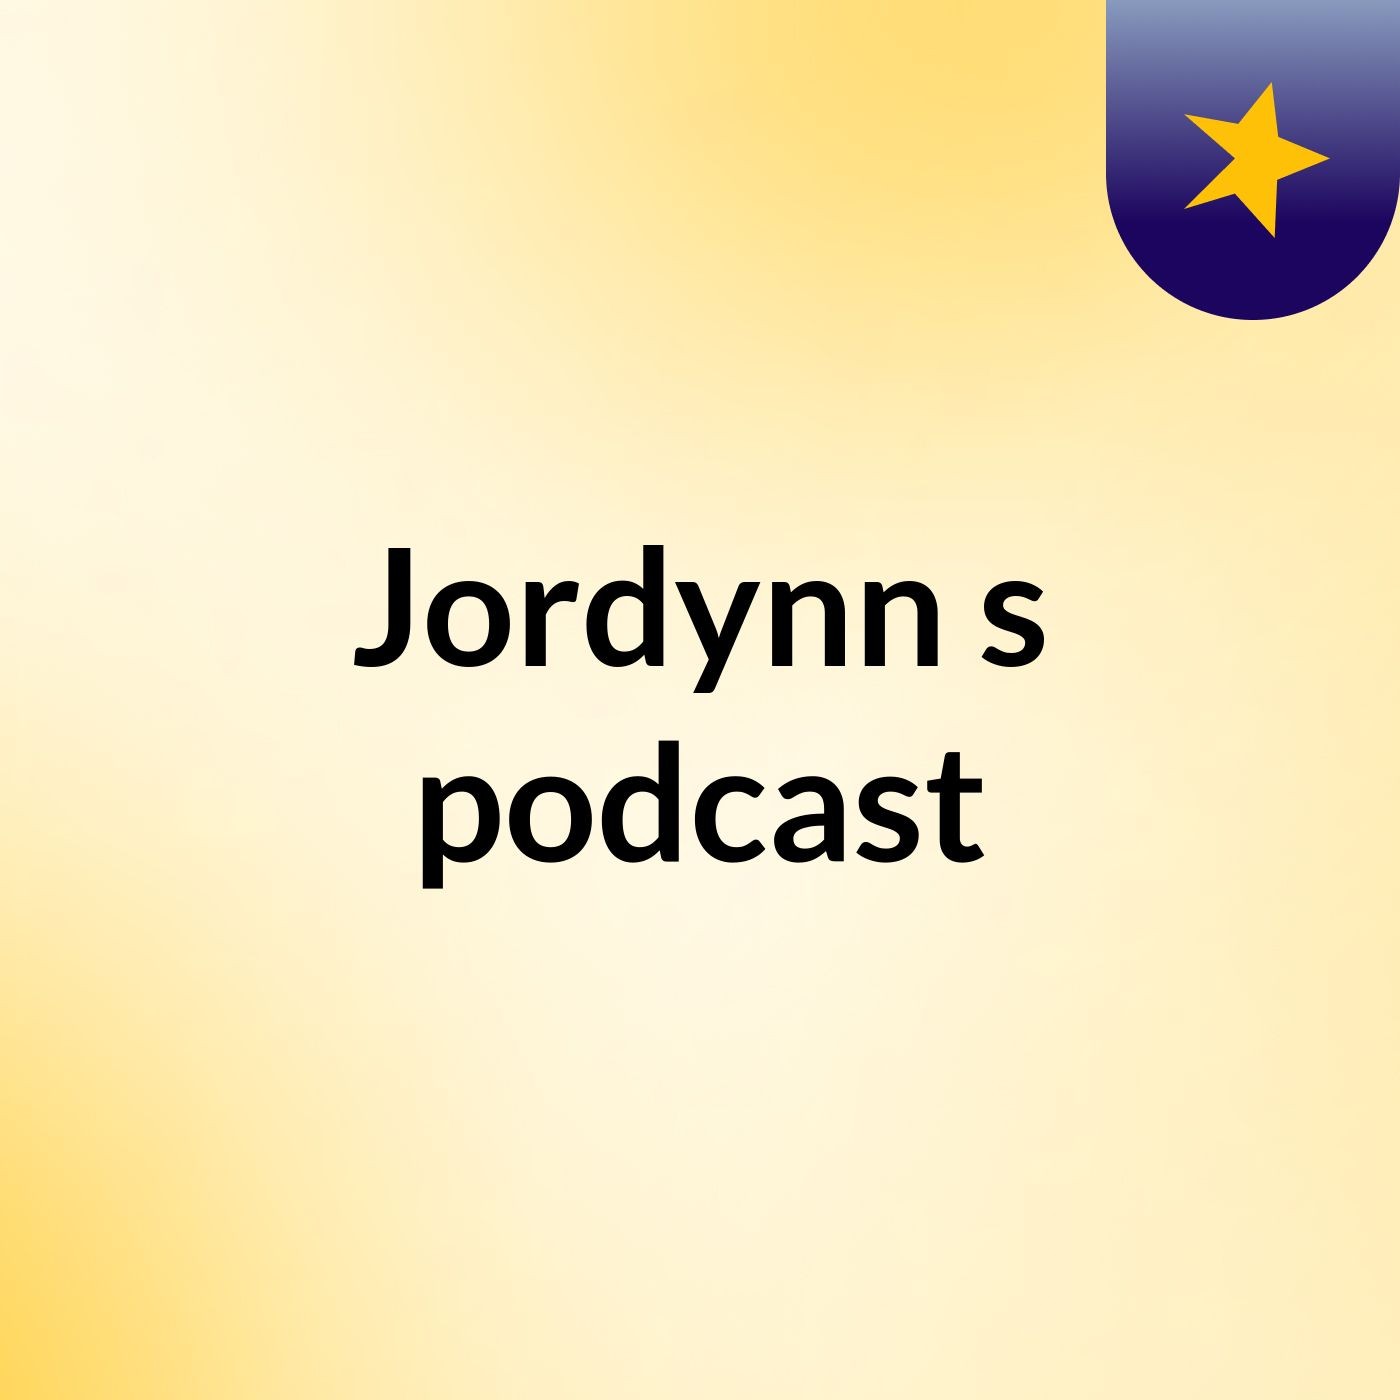 Episode 2 - Jordynn's podcast